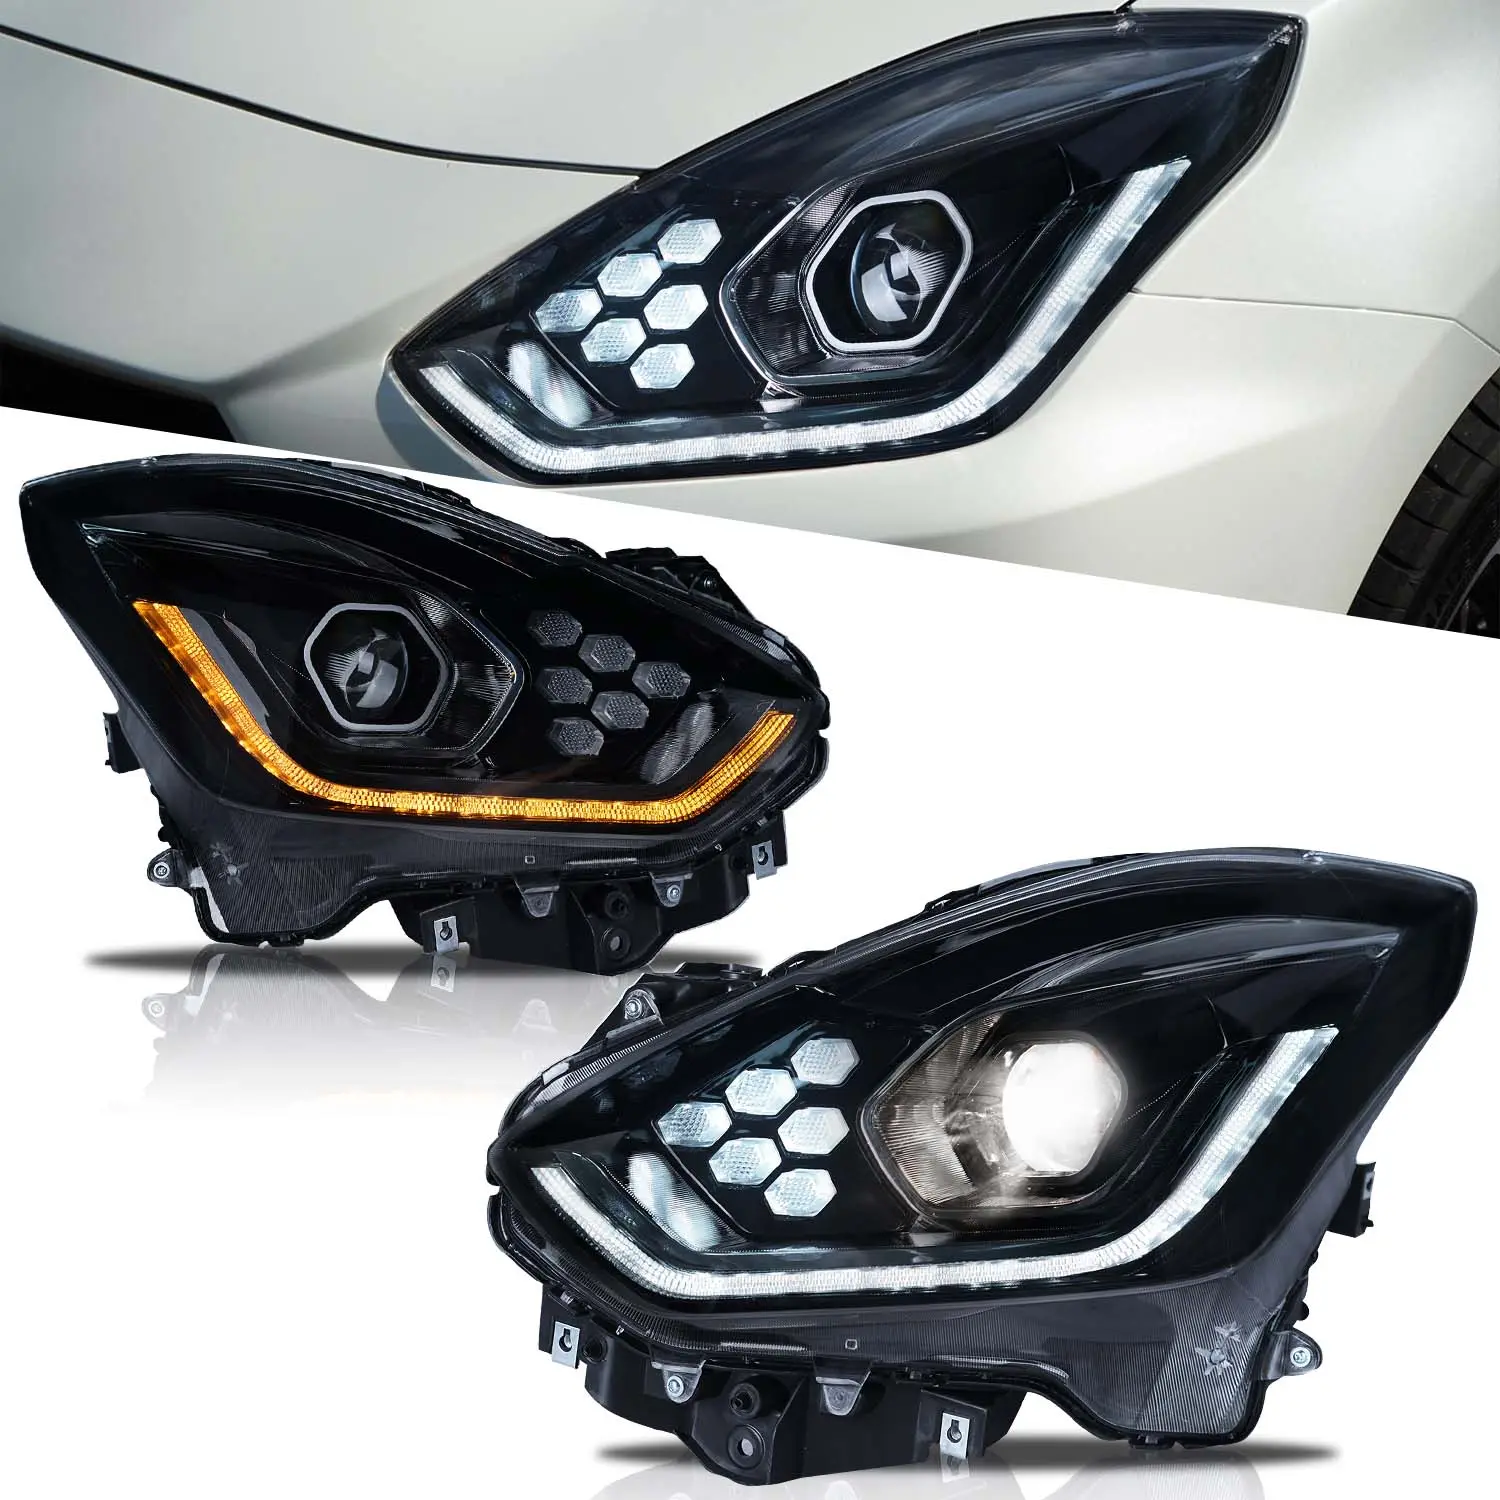 Archaic nuovo Design Led faro per Suzuki Swift 2018-2021 lampada frontale DRL segnale proiettore obiettivo accessori per lampade per auto automobilistiche